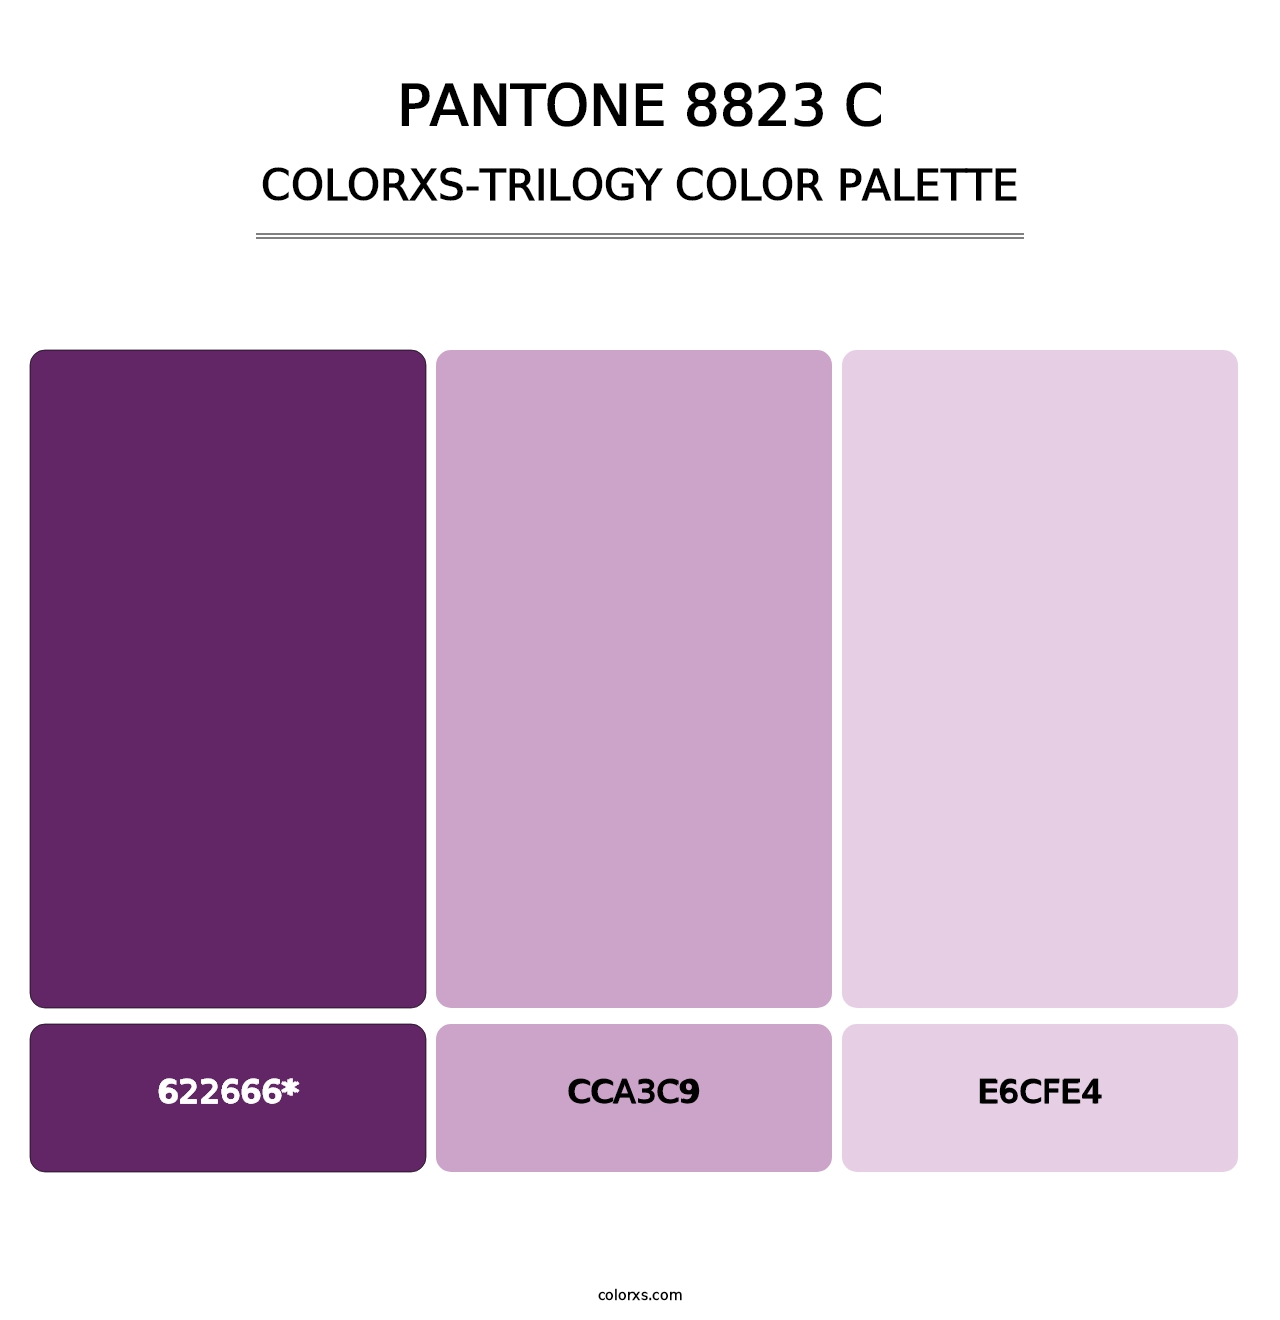 PANTONE 8823 C - Colorxs Trilogy Palette